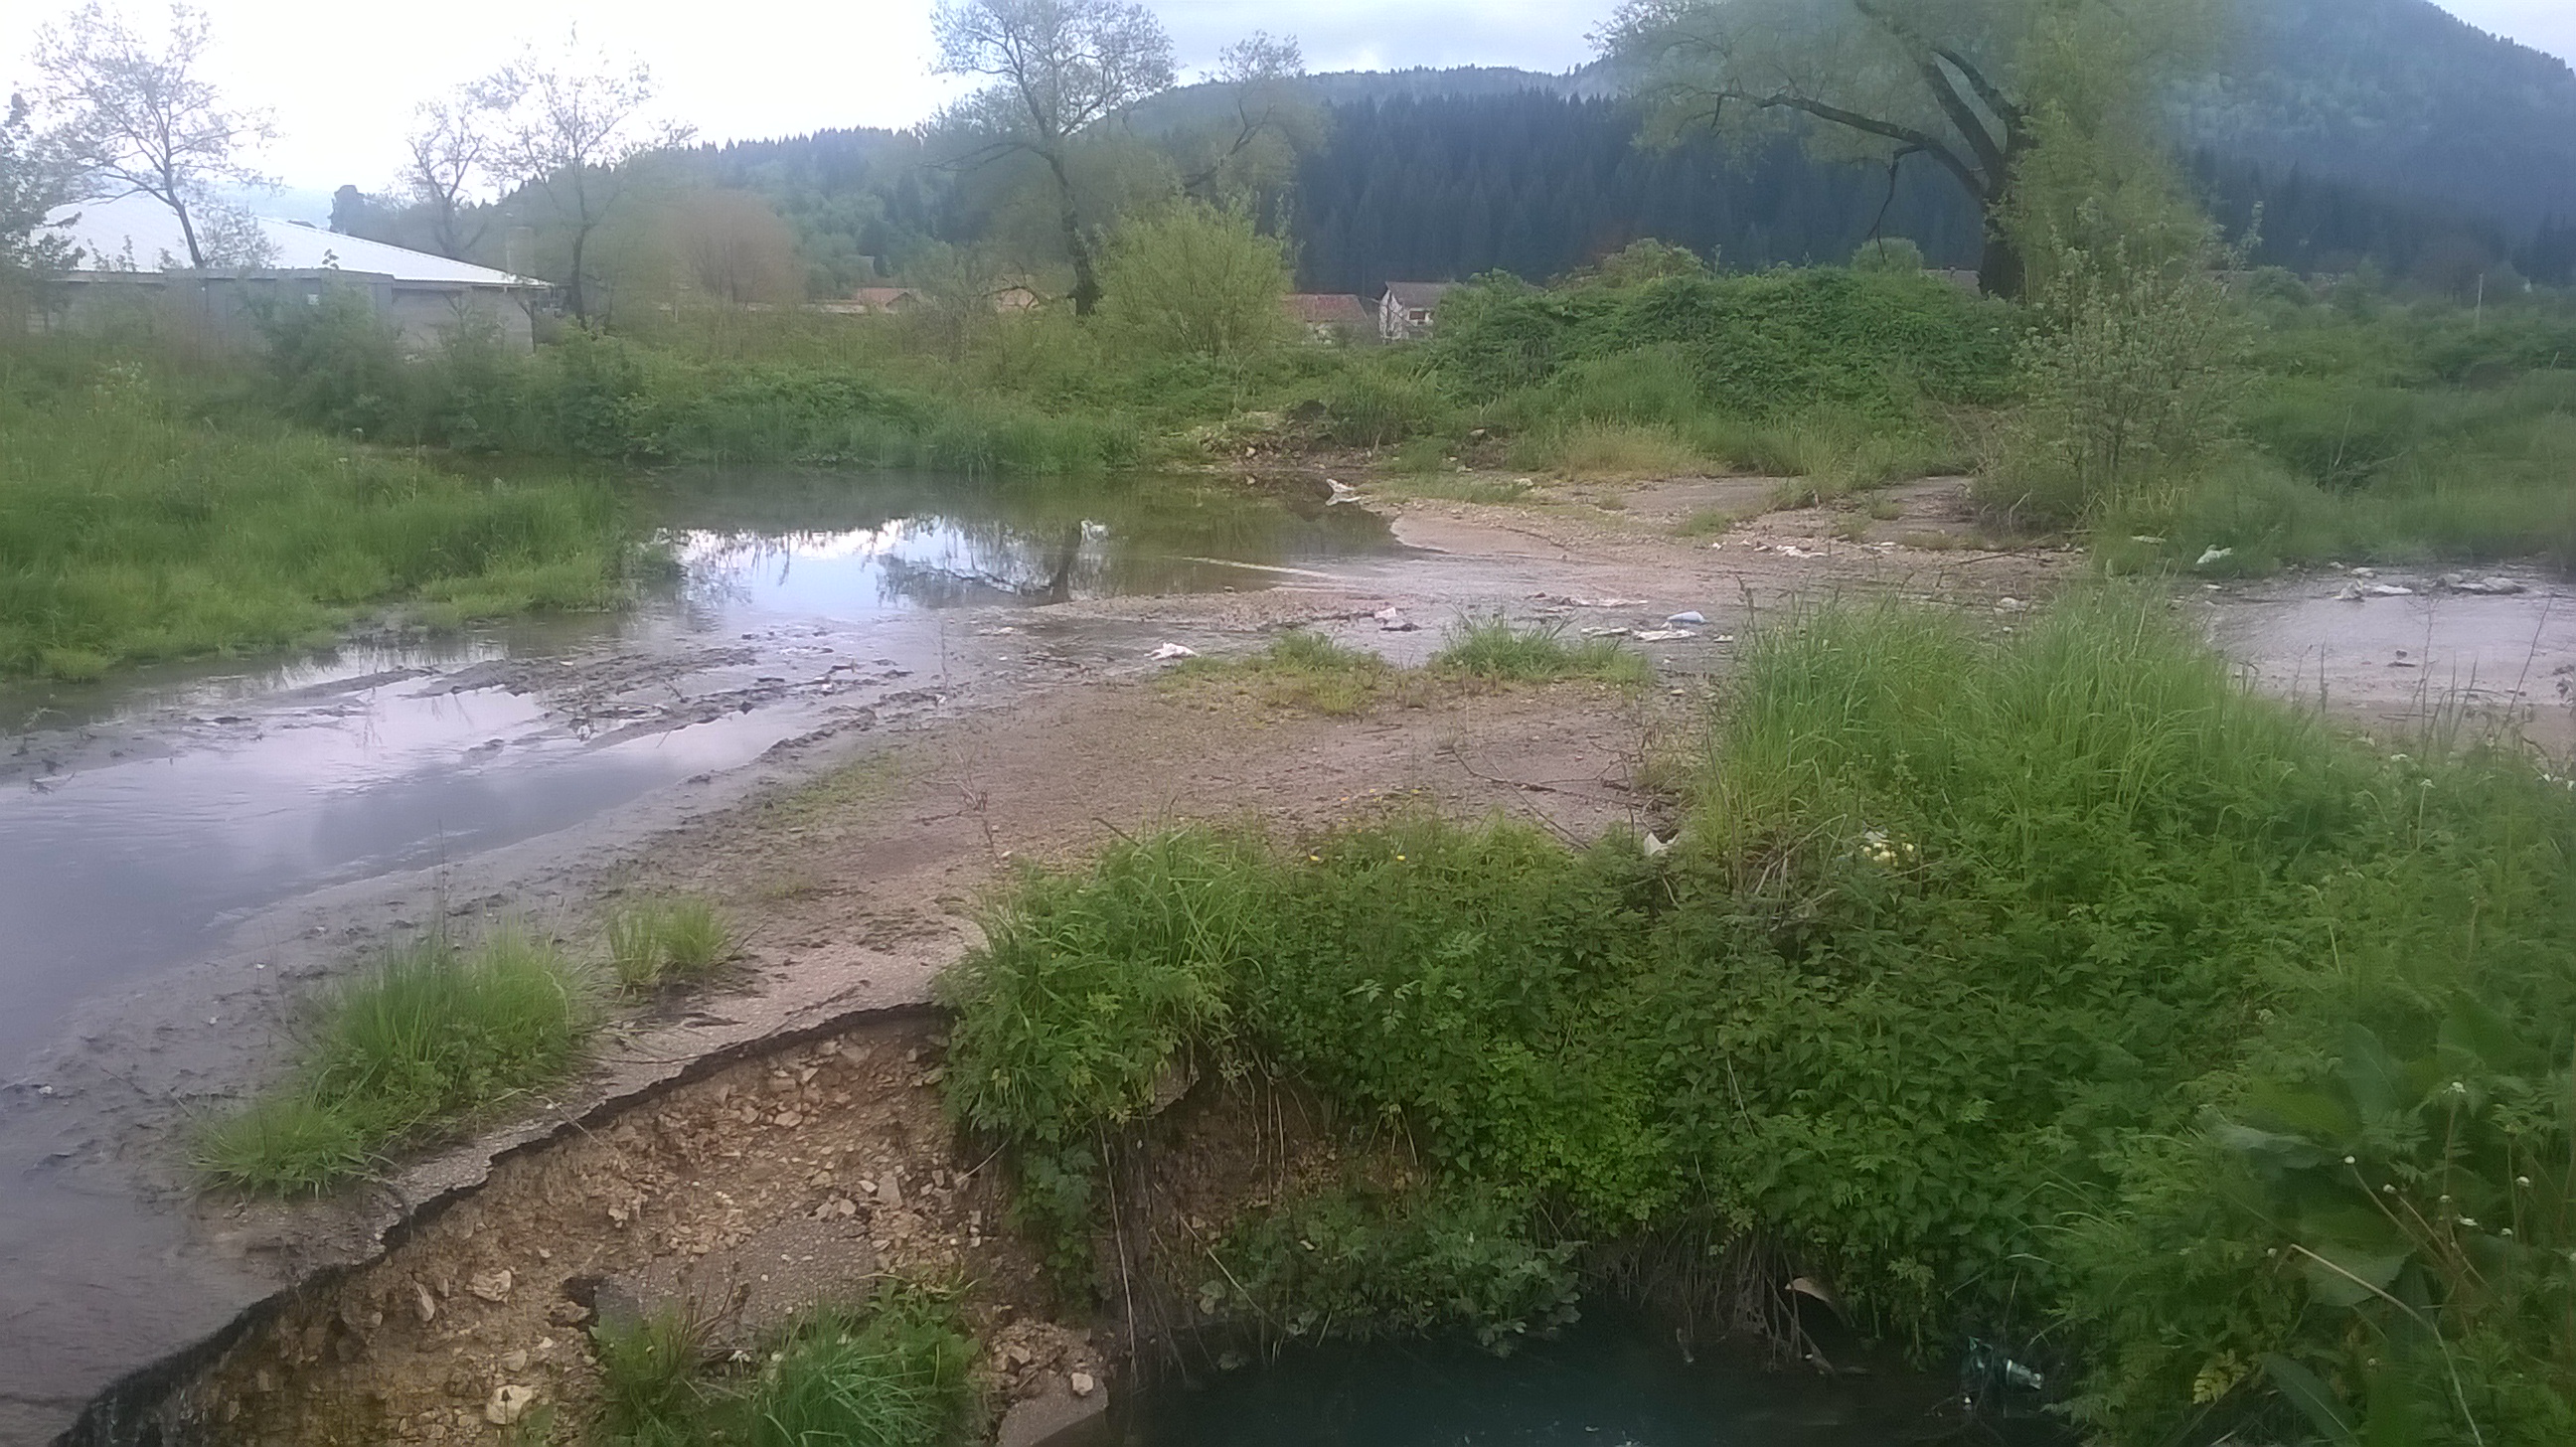 Kanalizacija teće kroz centar Glamoča, a ispred Doma Zdravlja u Glamoču nalazi se ogromna rupa puna kanalizacije